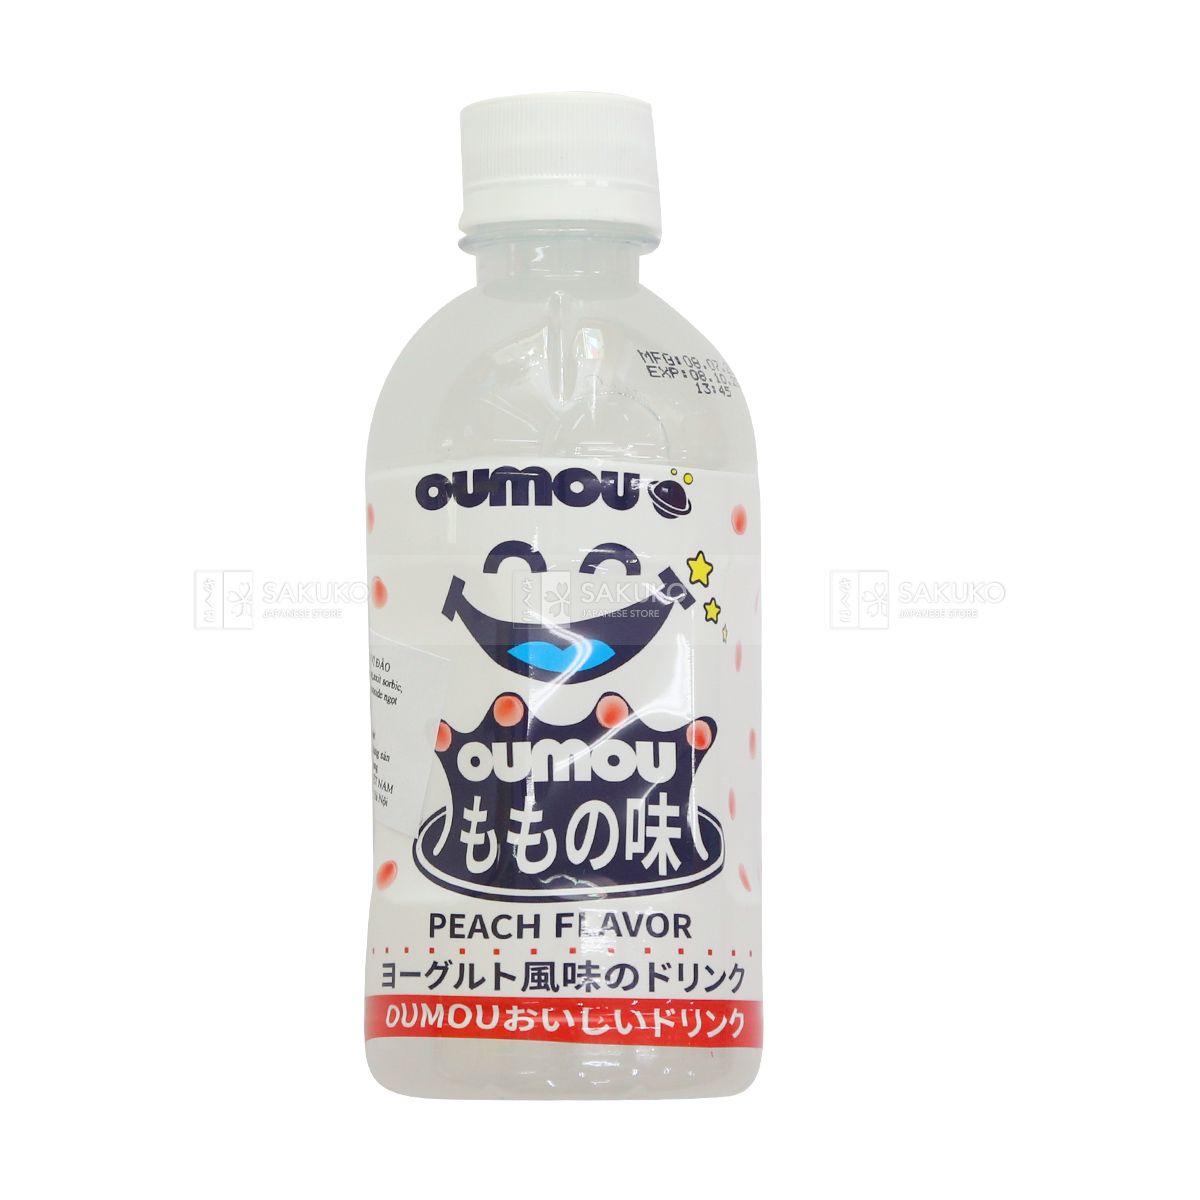  OUMOU- Nước giải khát sữa chua vị đào 300ml 